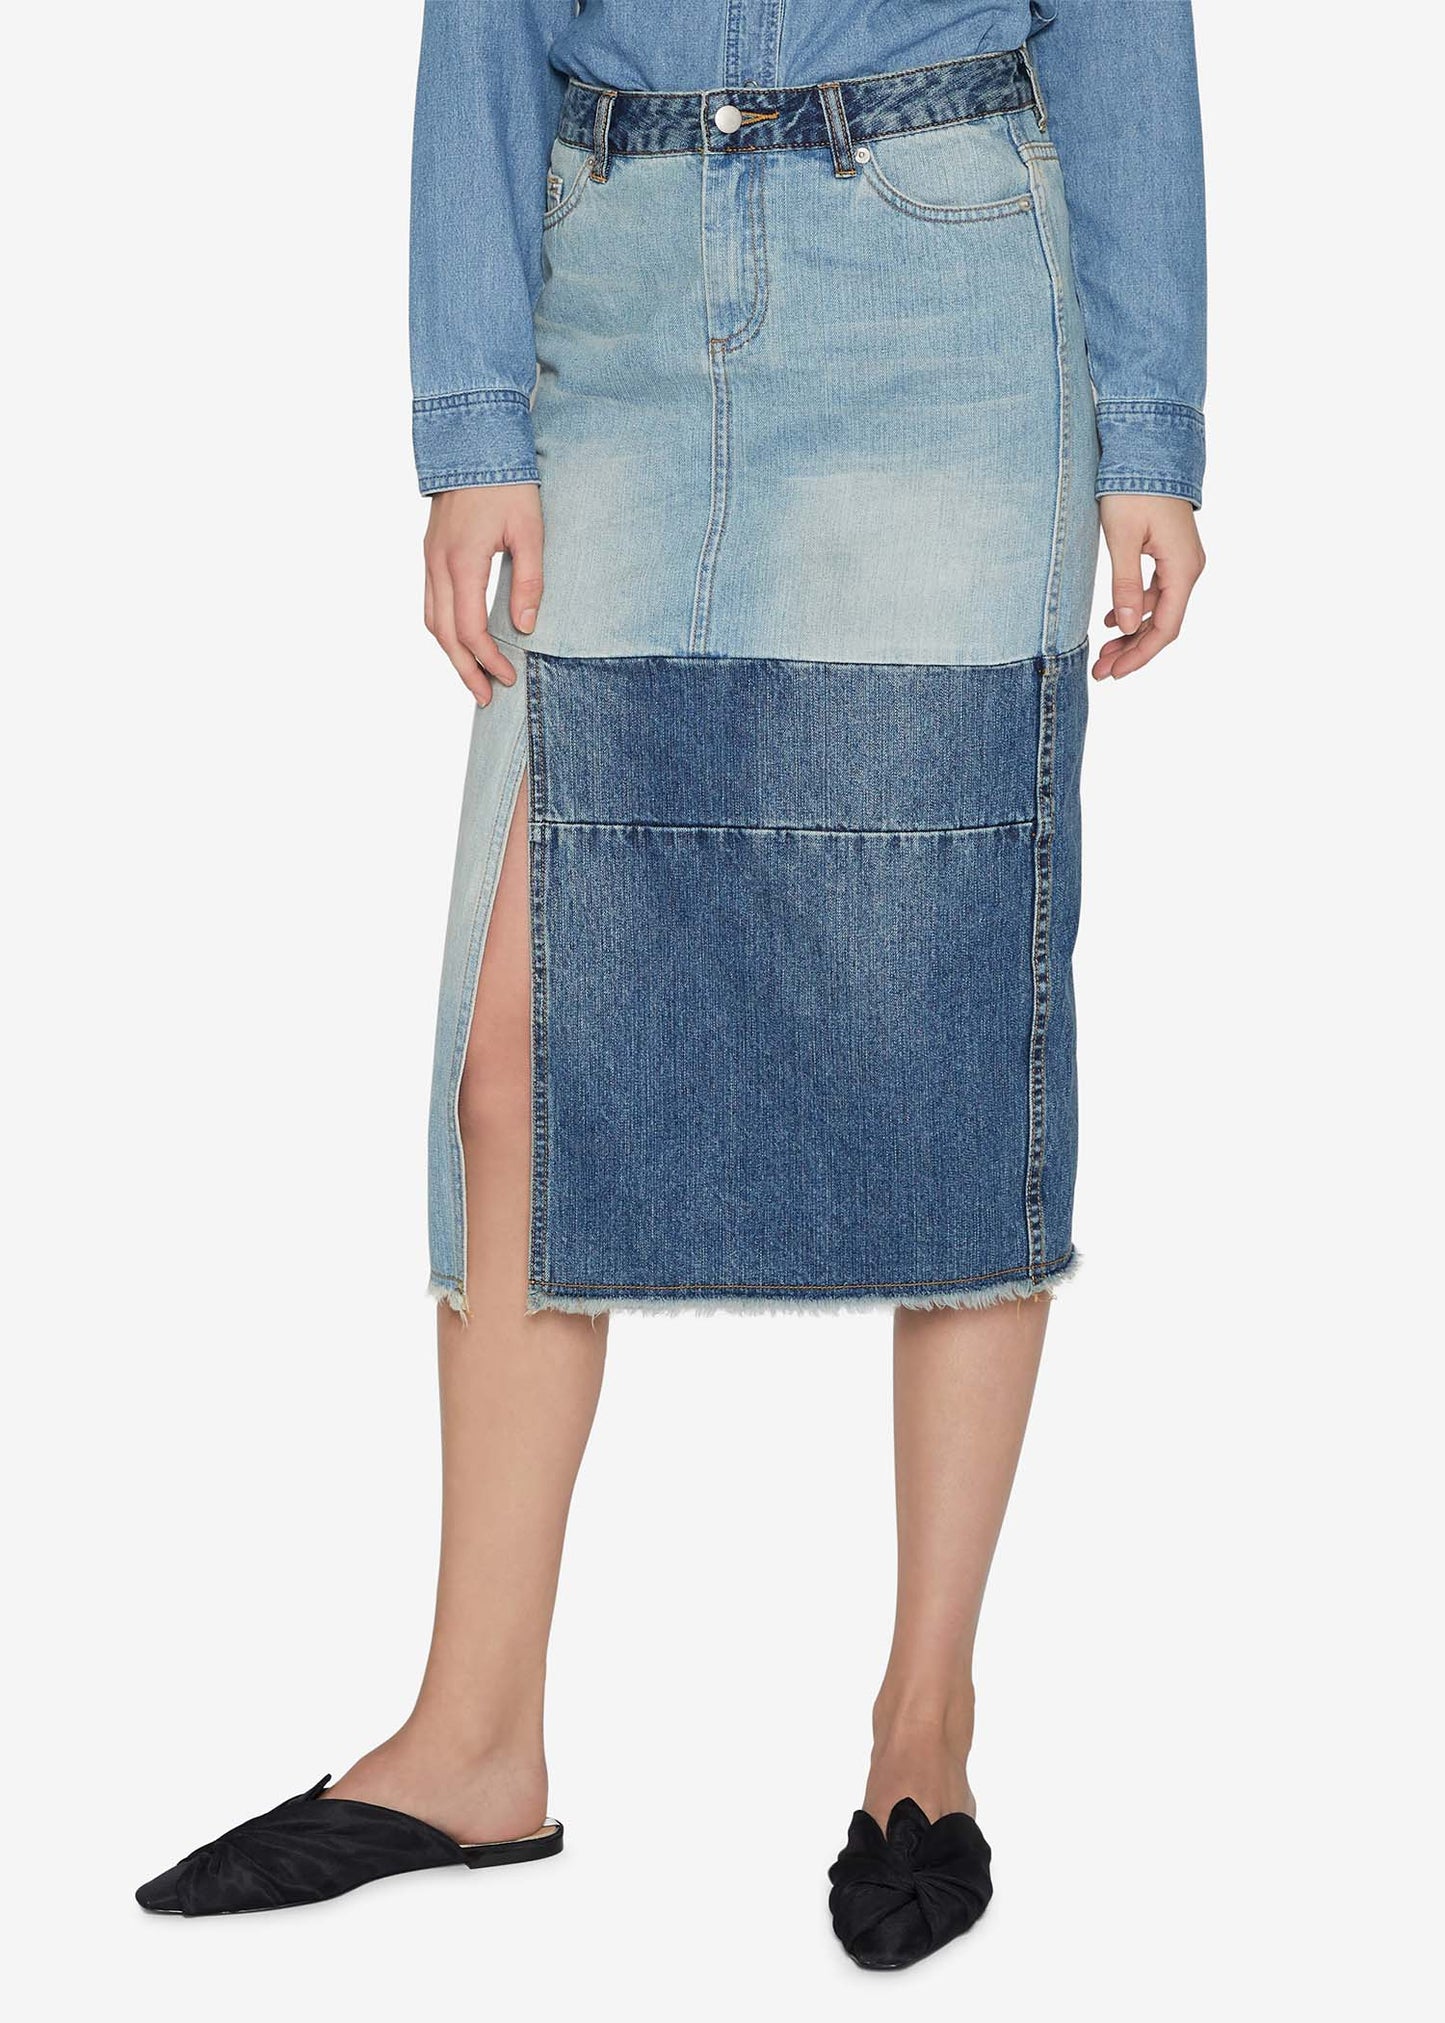 Two-tone Indigo Skirt